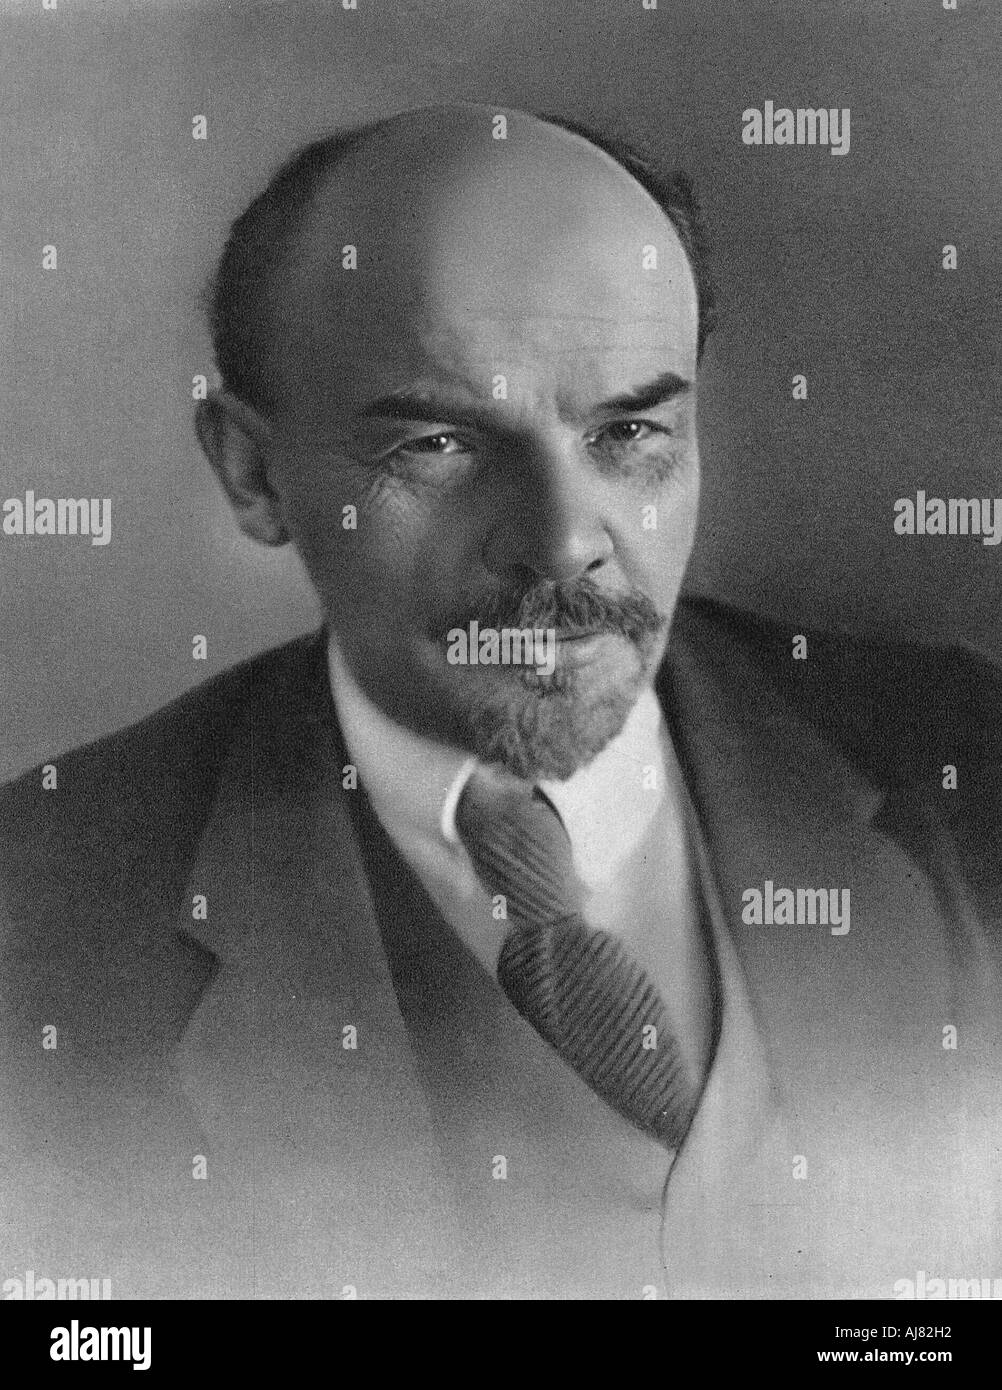 Vladimir Ilyich Ulyanov (Lenin), Russian Bolshevik revolutionary, c1917. Artist: Unknown Stock Photo